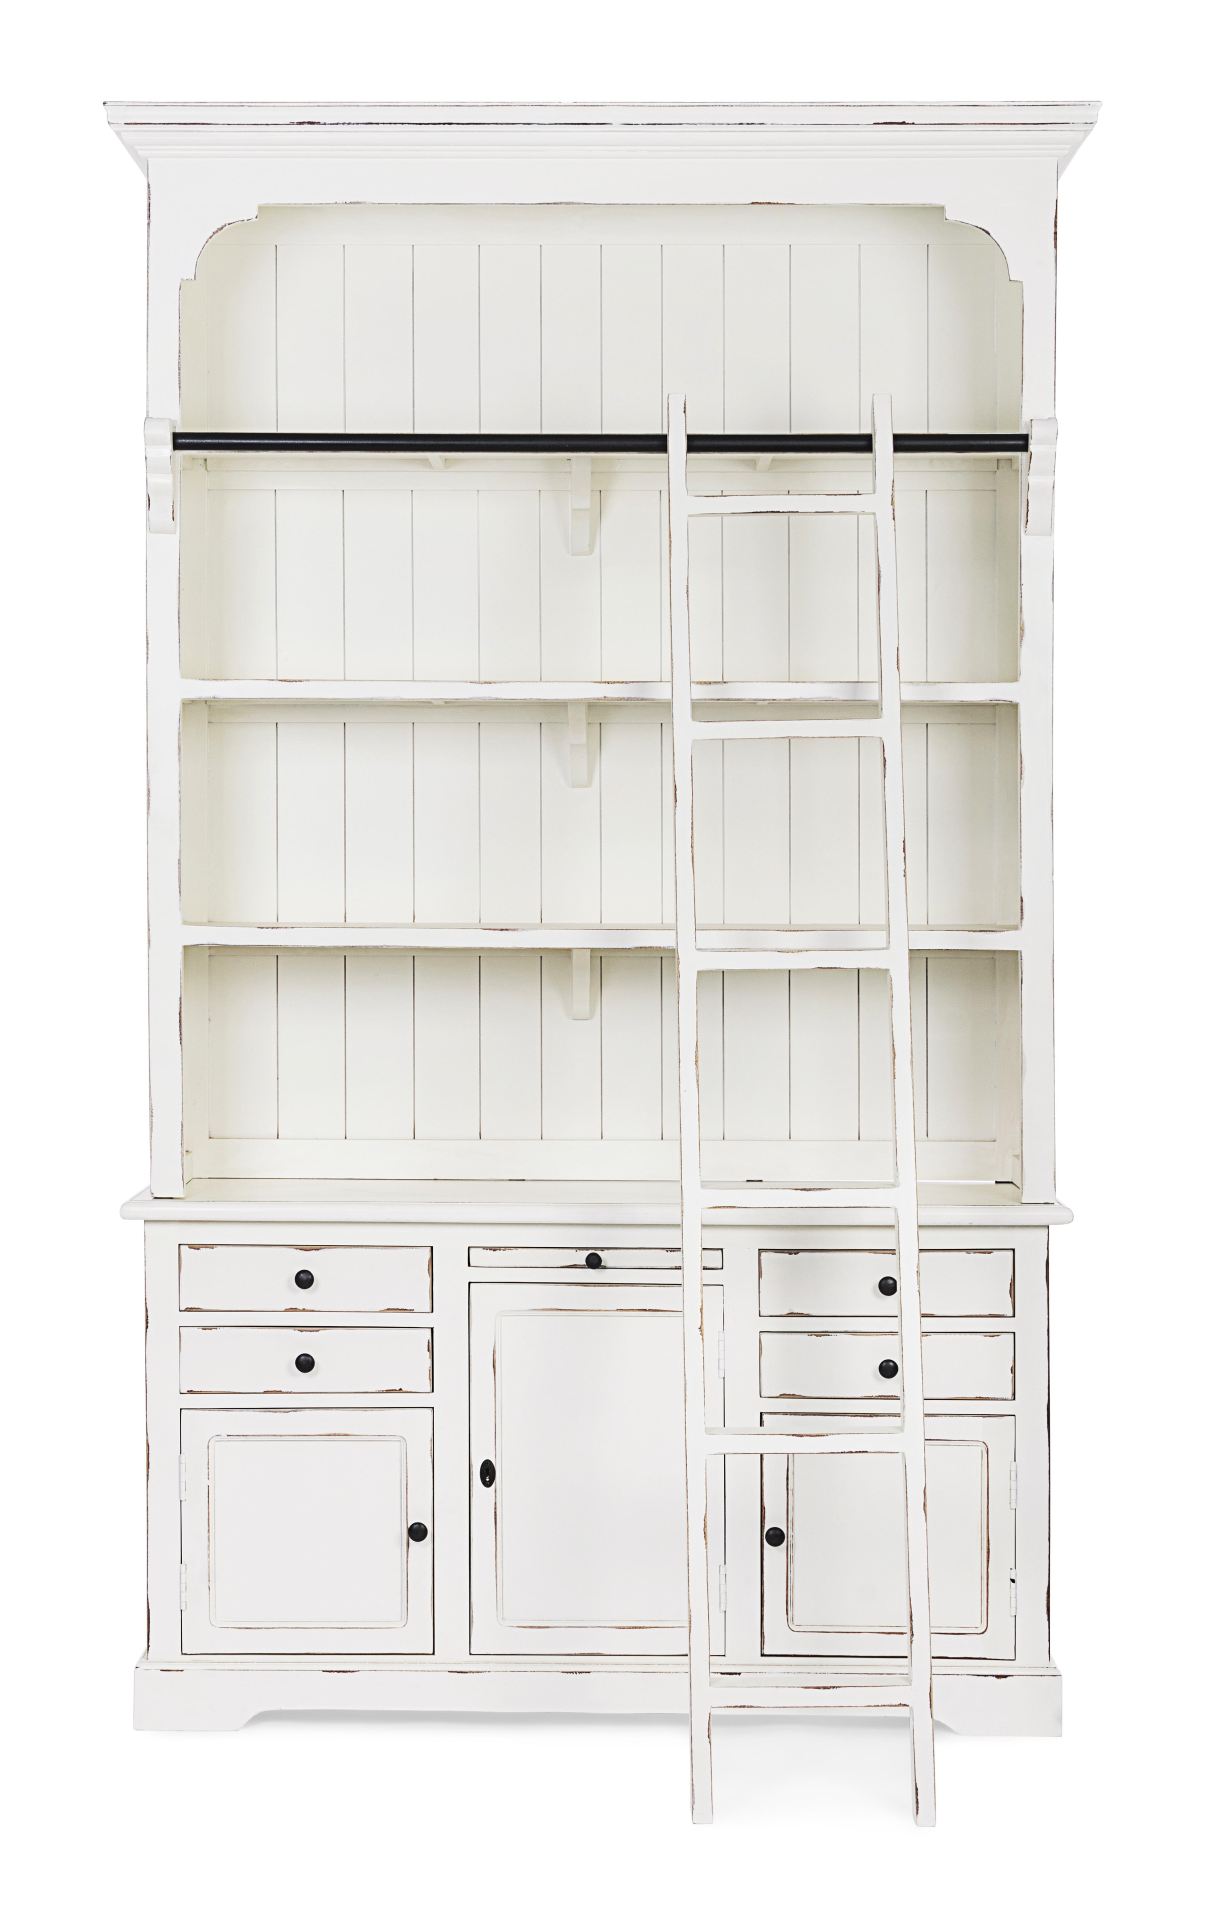 Der Bücherschrank Jefferson überzeugt mit seinem klassischen Design. Gefertigt wurde er aus Mangoholz, welches einen weißen Farbton besitzt. Das Gestell ist auch aus Mangoholz. Der Schrank verfügt über drei Türen und vier Schubladen. Die Breite beträgt 14